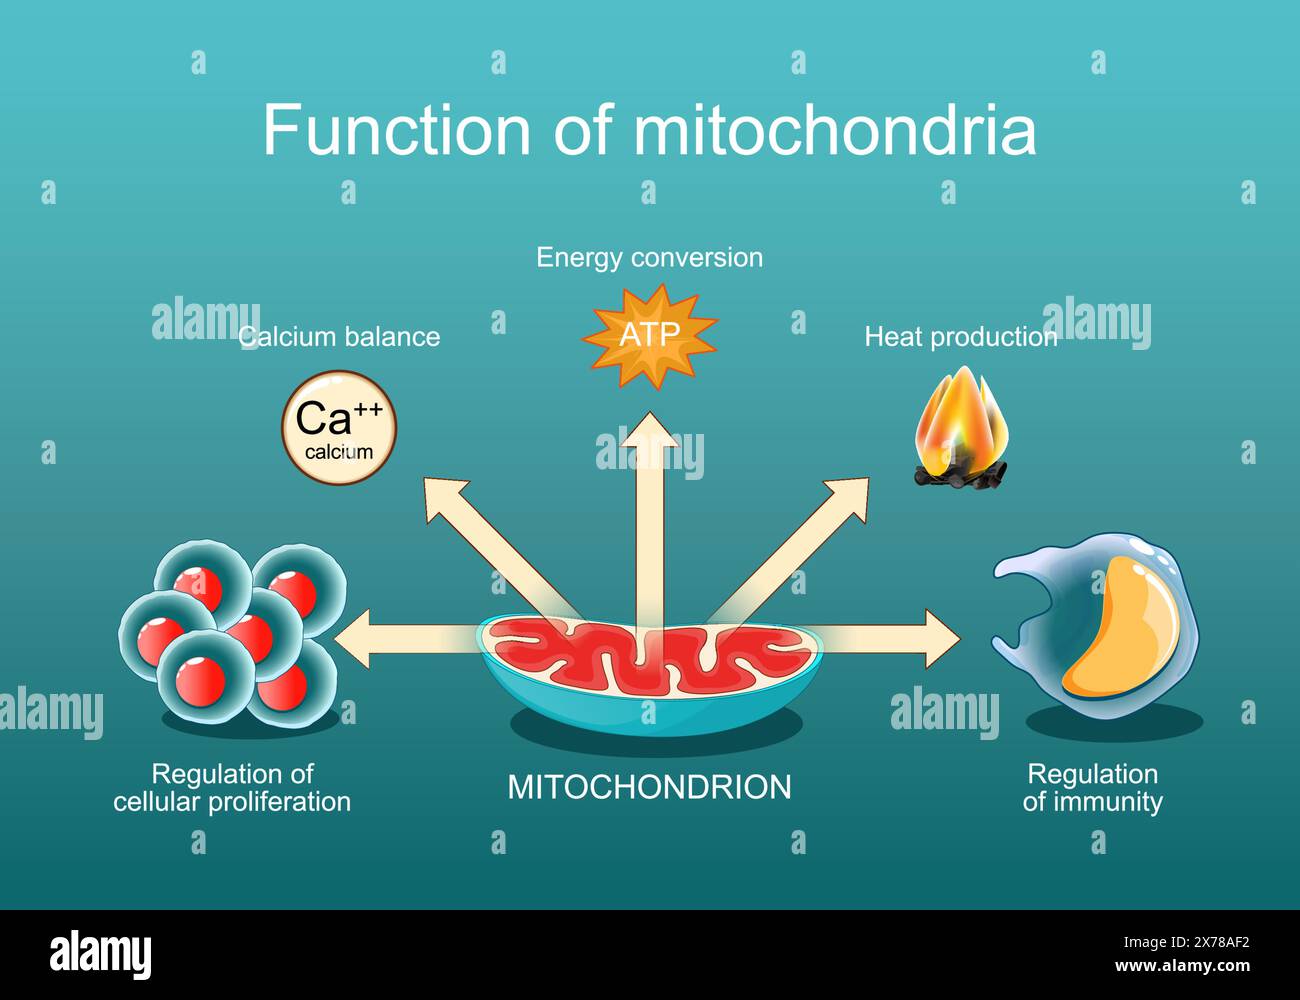 Die Funktion der Mitochondrien. Regulierung der Immunität und Zellproliferation, Kalziumbilanz, Wärmeerzeugung, Energieumwandlung. Mitochondriale medici Stock Vektor